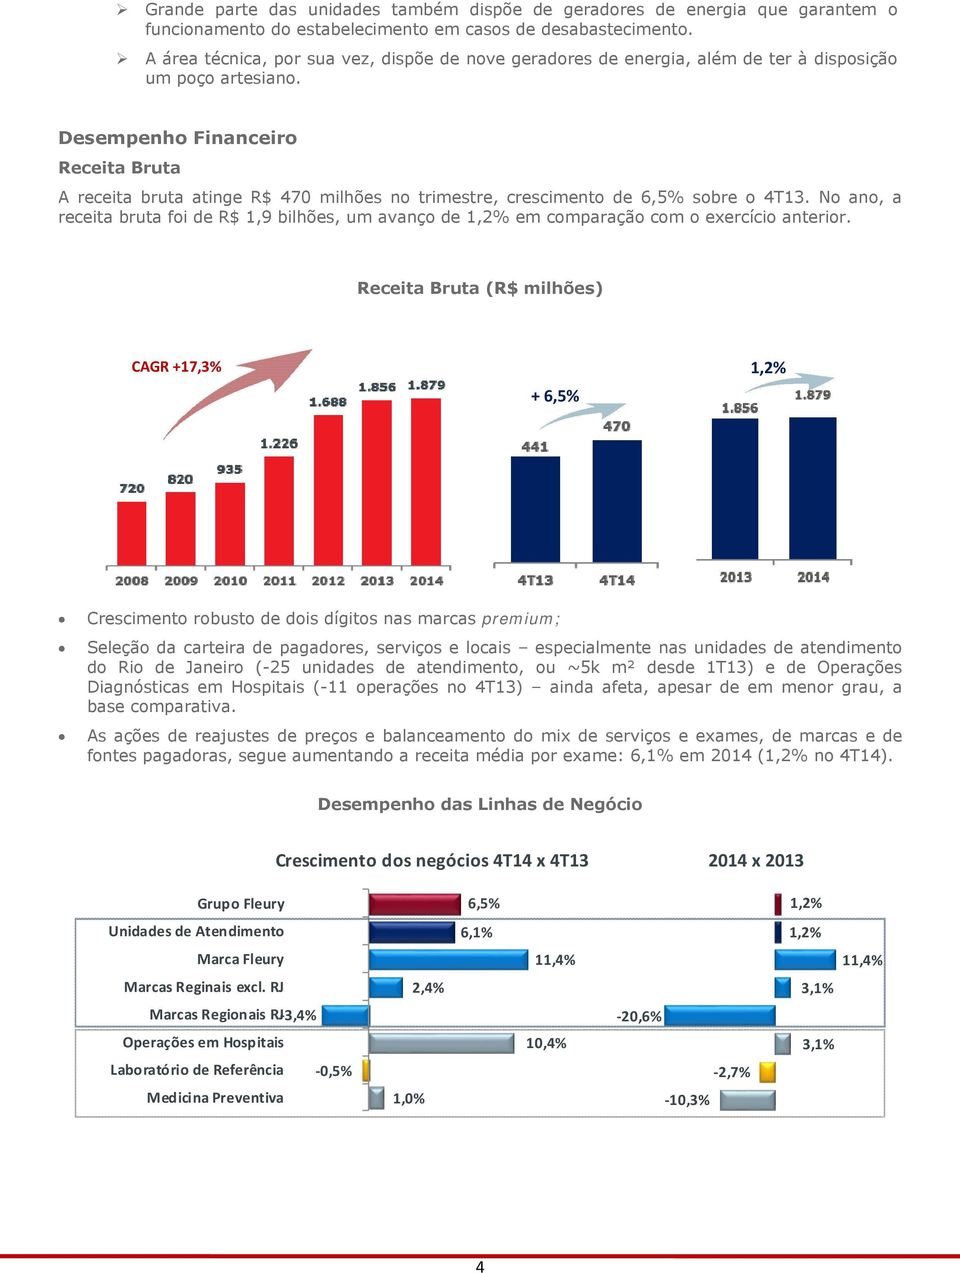 Desempenho Financeiro Receita Bruta A receita bruta atinge R$ 470 milhões no trimestre, crescimento de 6,5% sobre o 4T13.